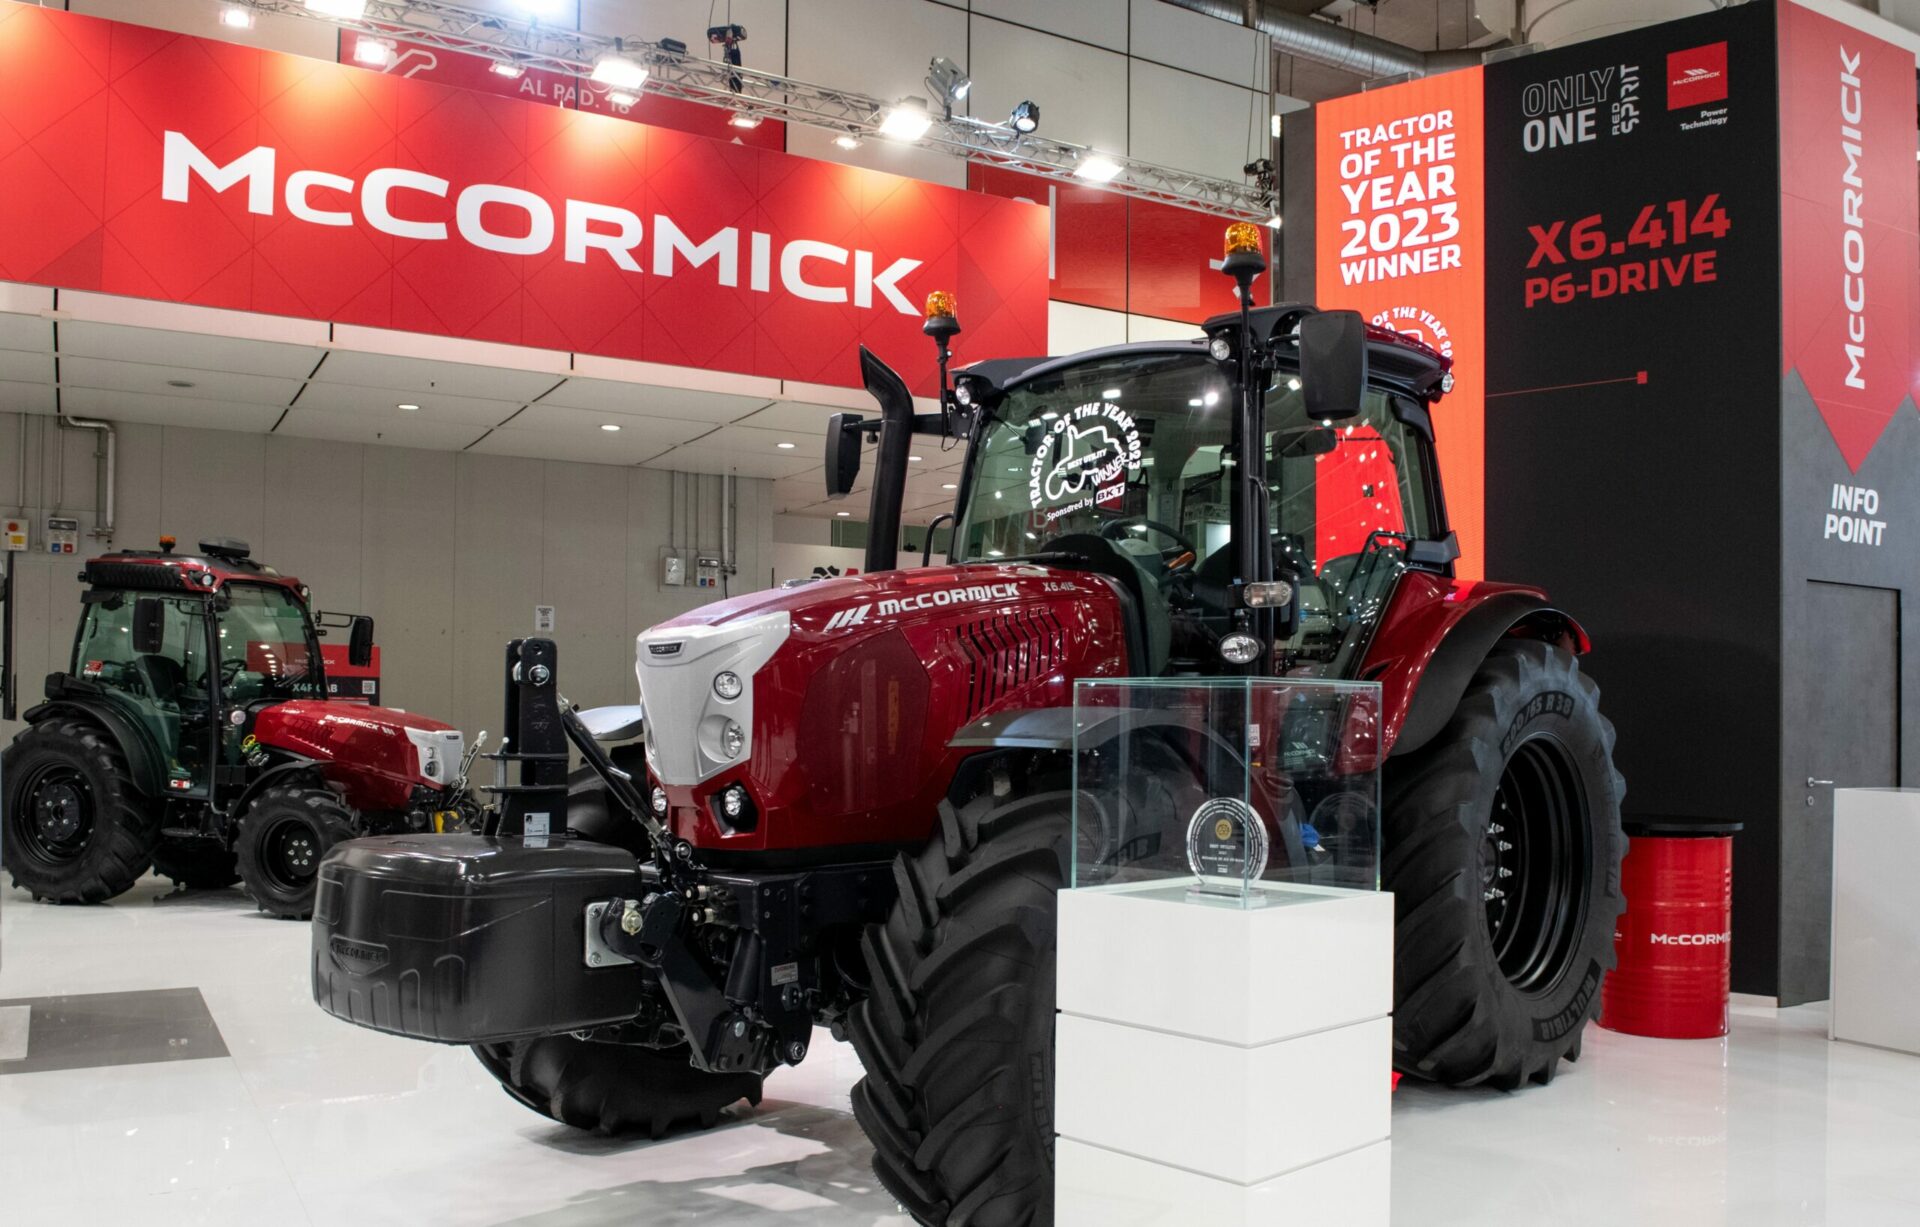 McCormick X6.414 P6Drive è Tractor of The Year 2023 nella categoria